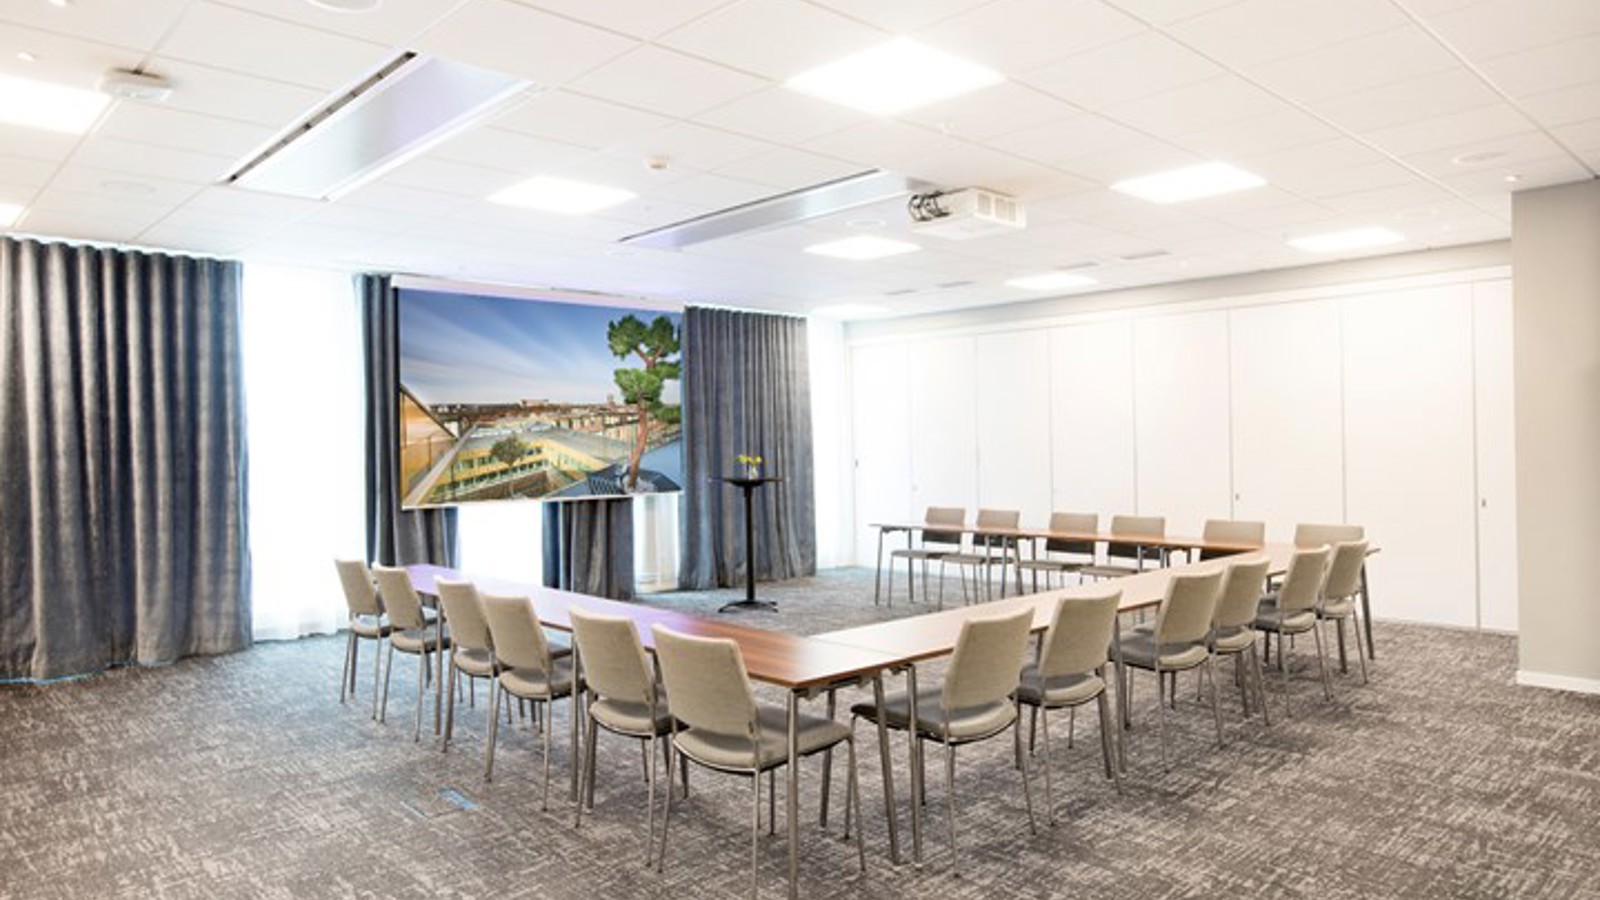 Konferensrum med u-sittning, grått golv, grå stolar och tända lampor i taket